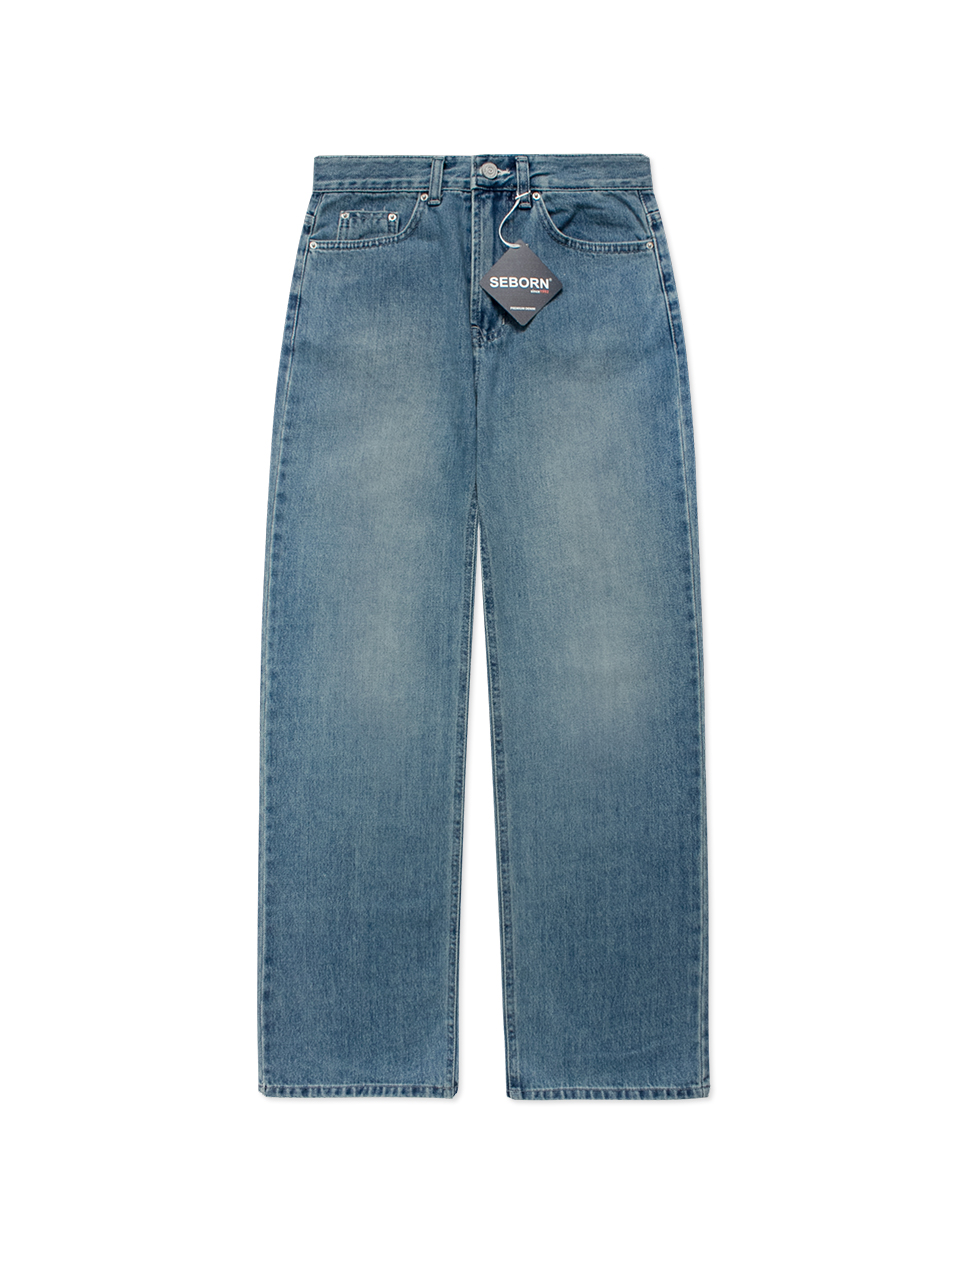 [WIDE] Roxy Jeans